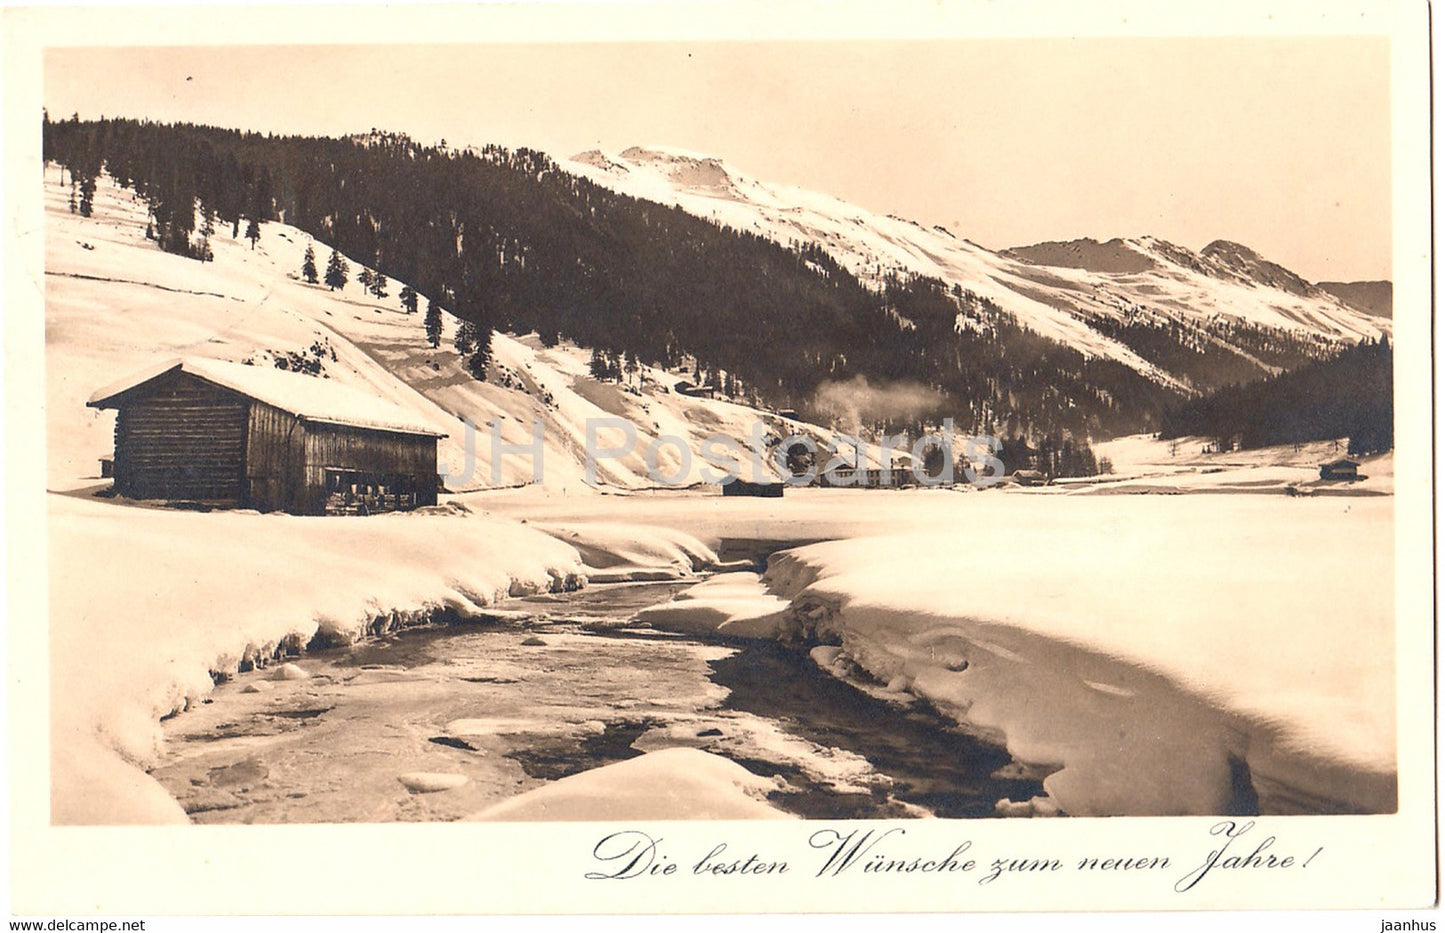 New Year Greeting Card - Die Besten Wunsche zum Neuen Jahre - mountains - old postcard - 1928 - Switzerland - used - JH Postcards